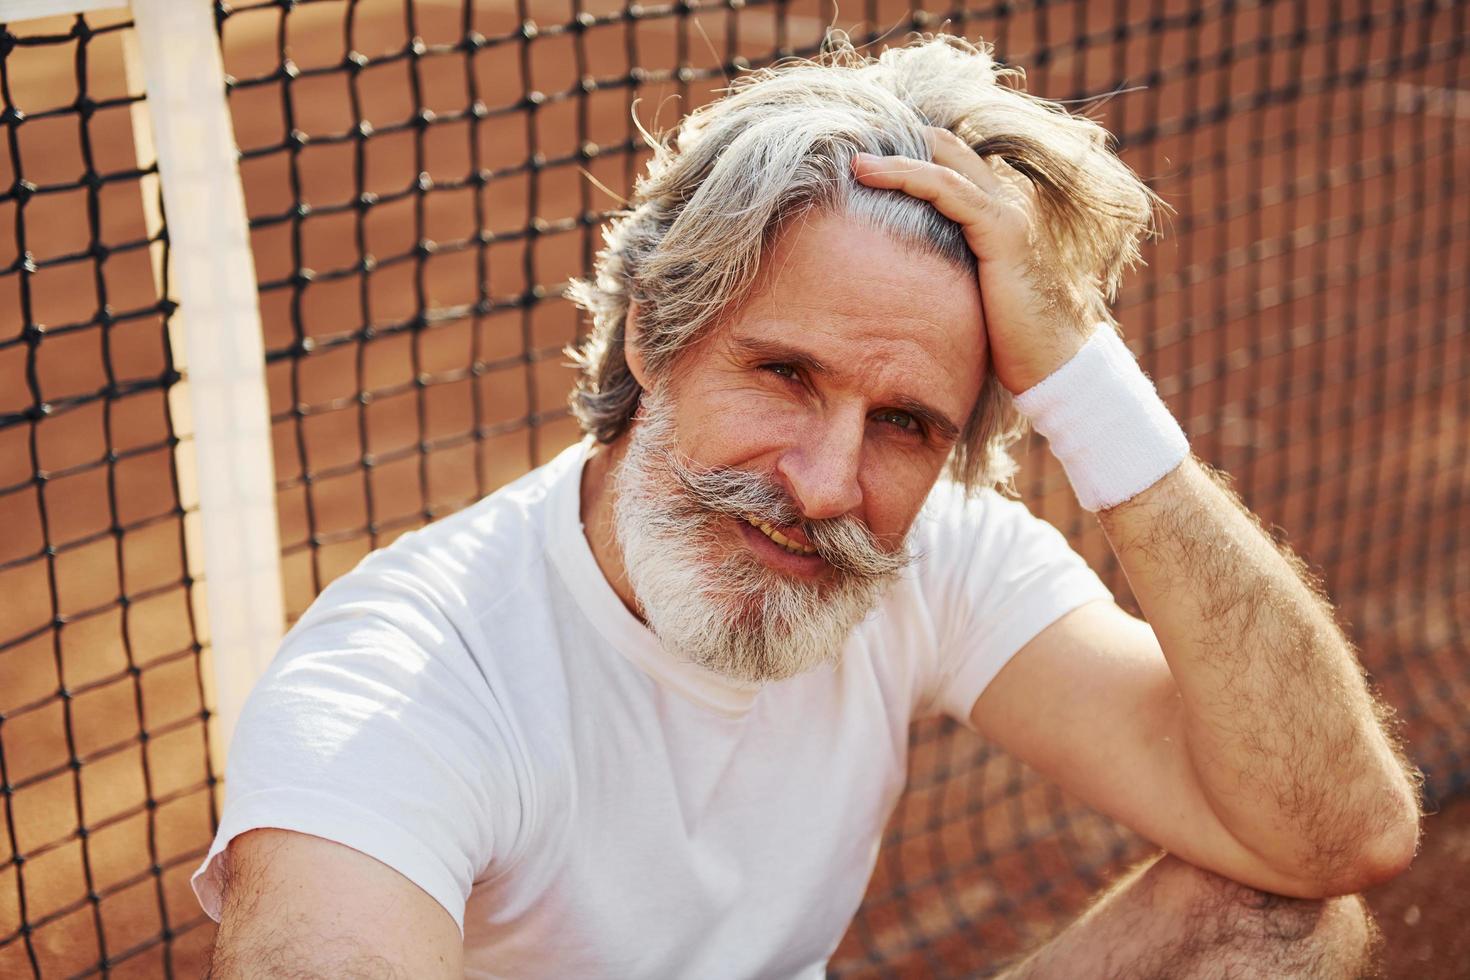 Älterer, moderner, stilvoller Mann mit Schläger im Freien auf dem Tennisplatz tagsüber foto